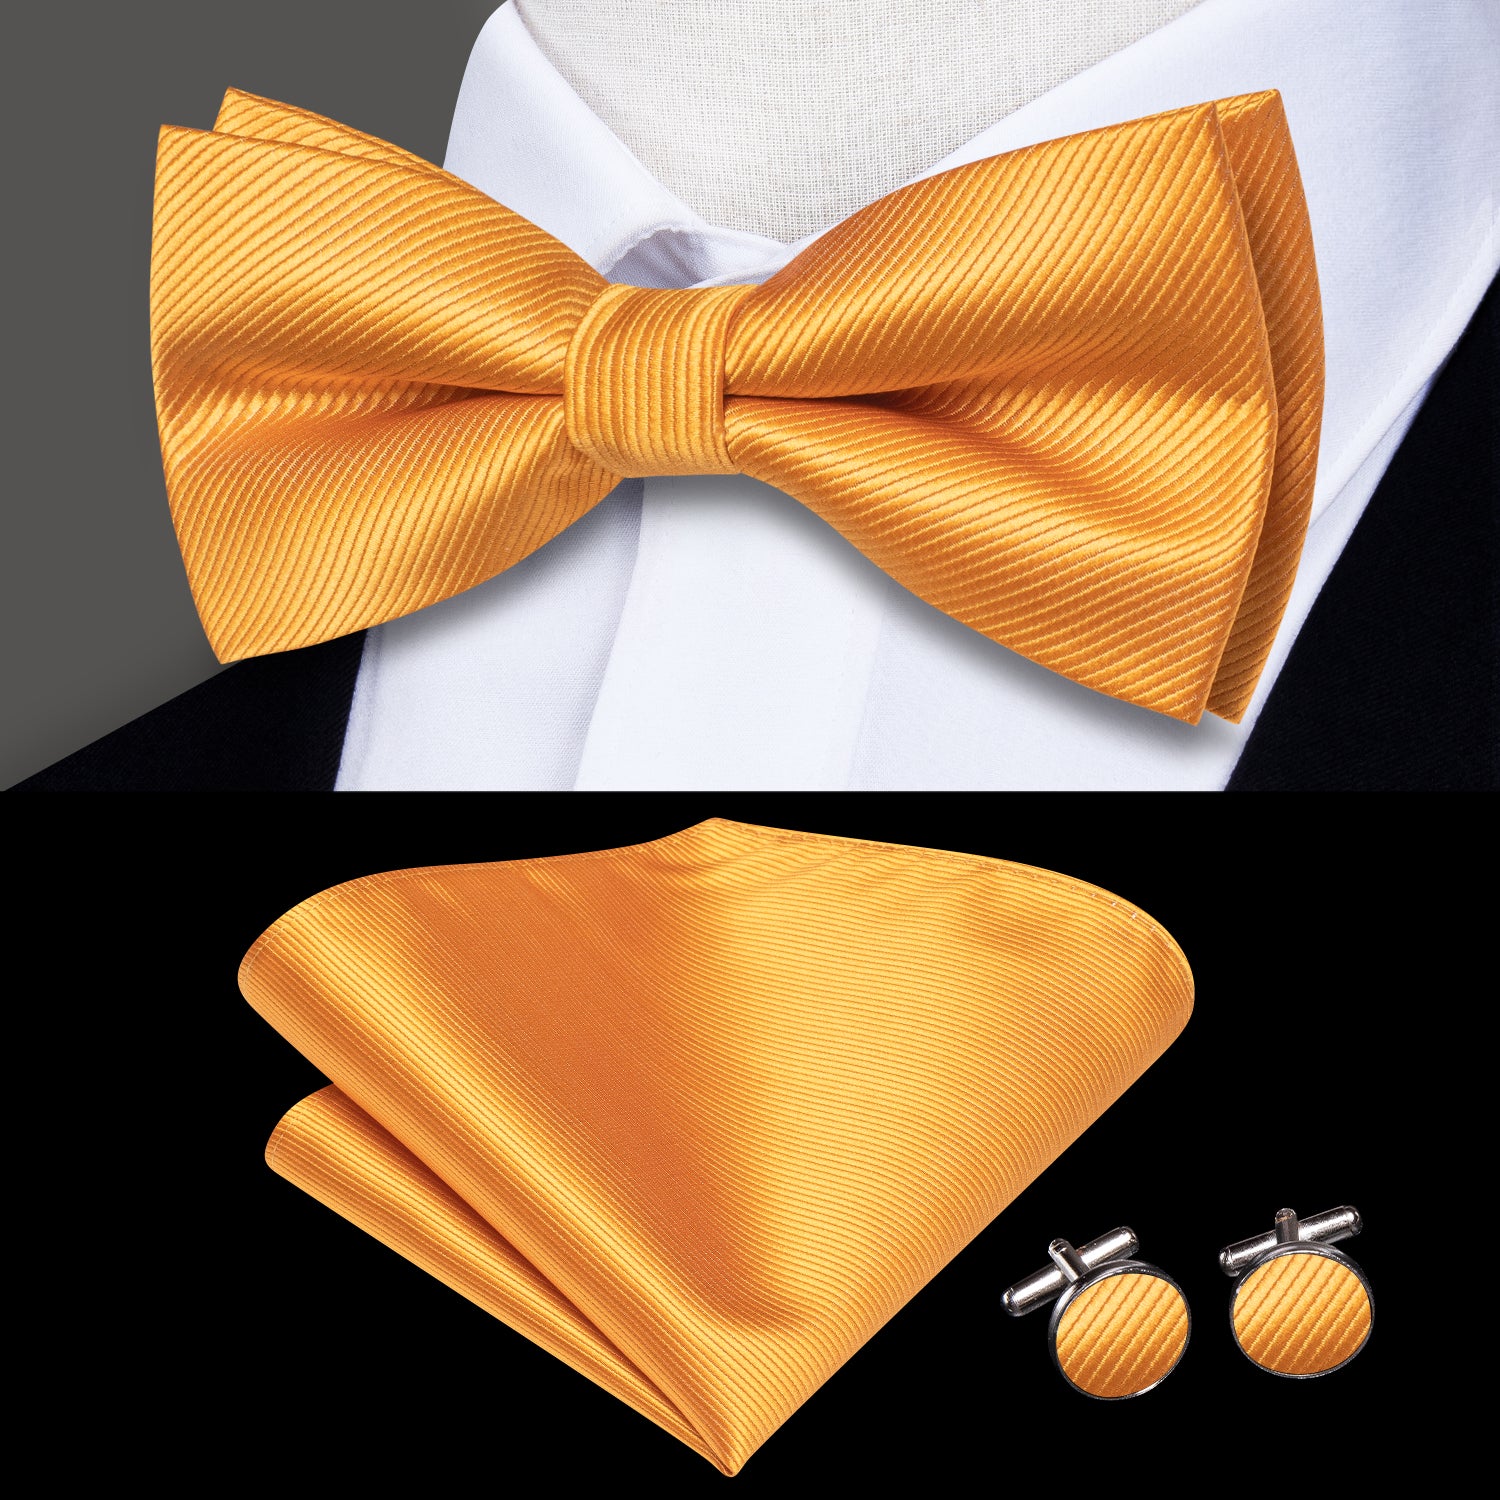 Golden Striped Pre-tied Bow Tie Hanky Cufflinks Set